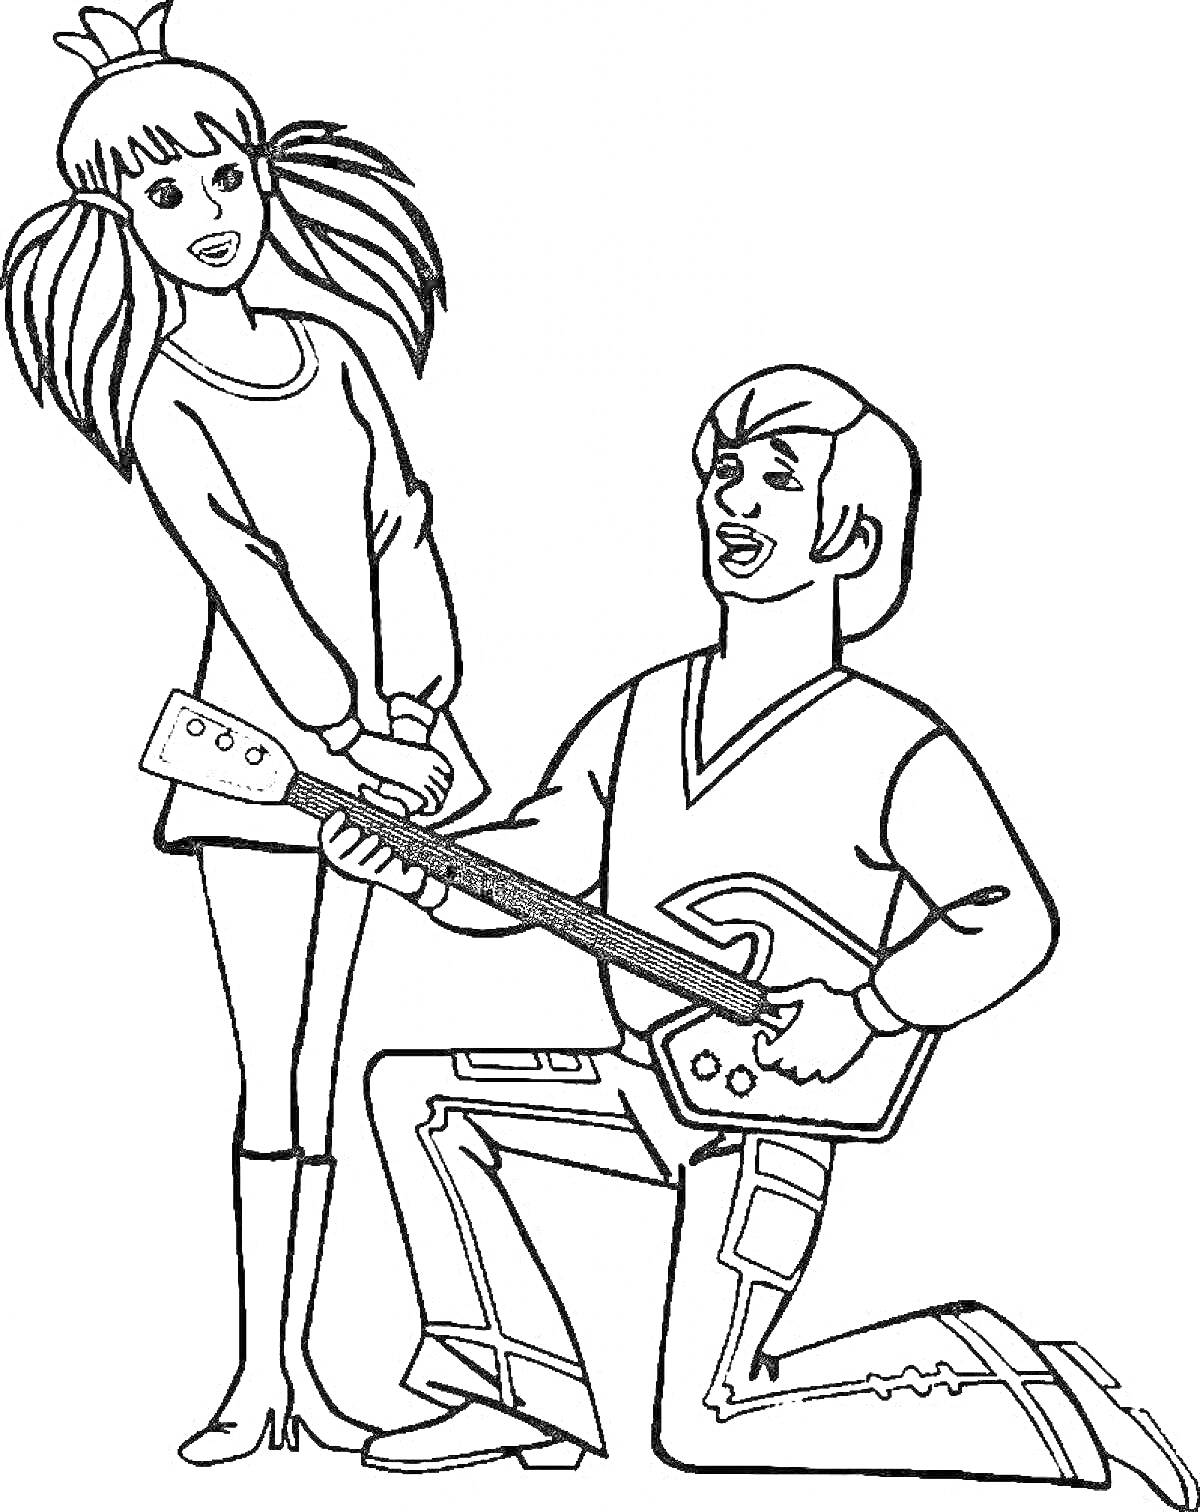 Раскраска Принцесса и трубадур из Бременских музыкантов, стоящие рядом, трубадур играет на гитаре